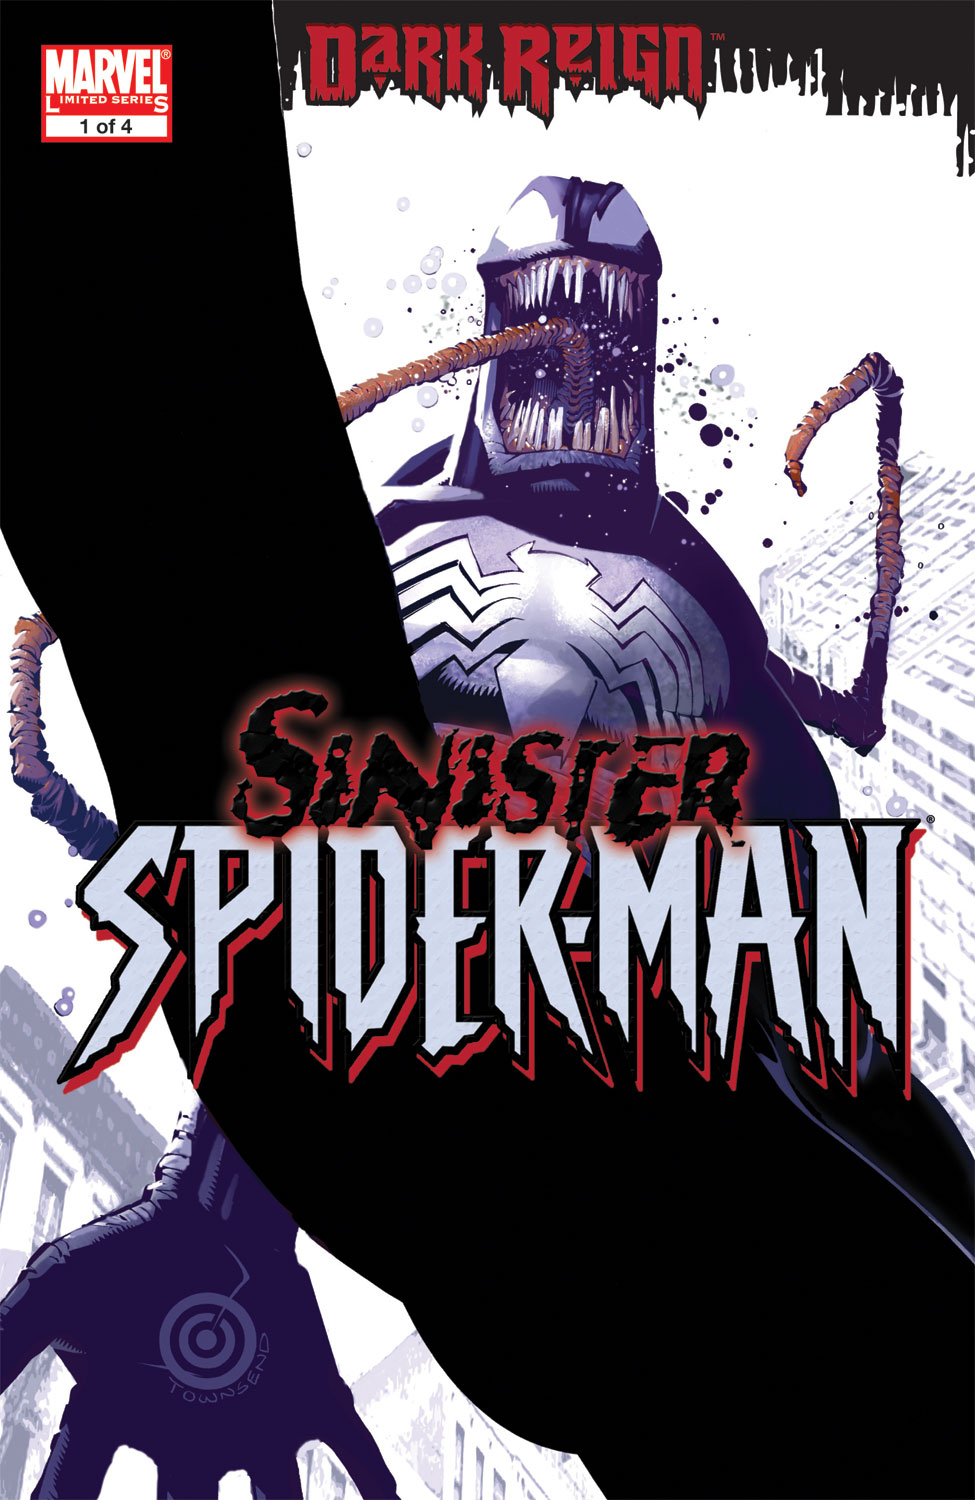 Dark Reign: The Sinister Spider-Man Issue #1 #1 - English 1